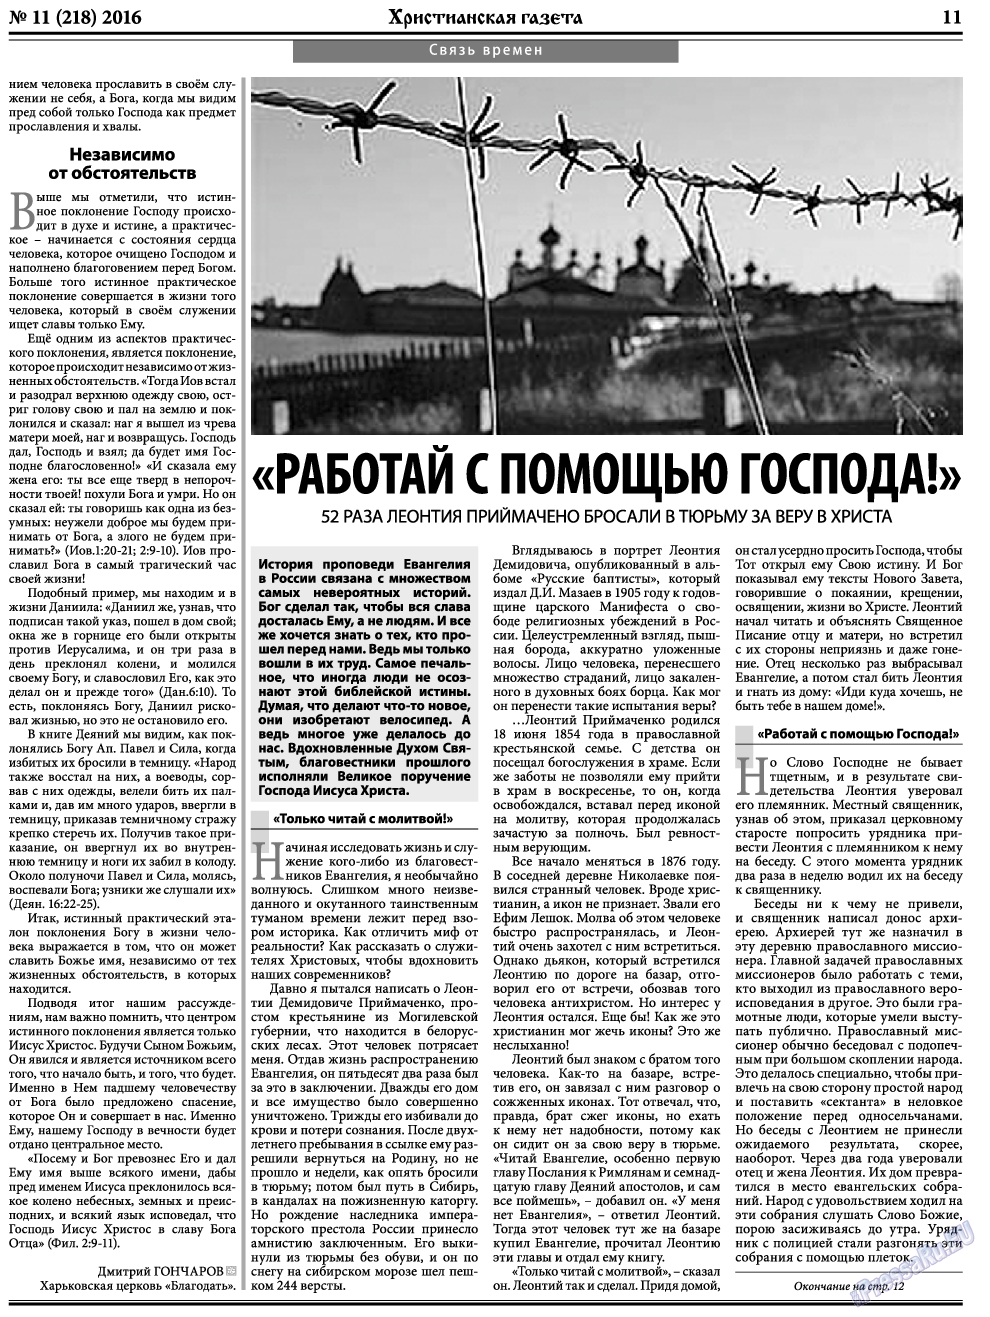 Христианская газета, газета. 2016 №11 стр.11